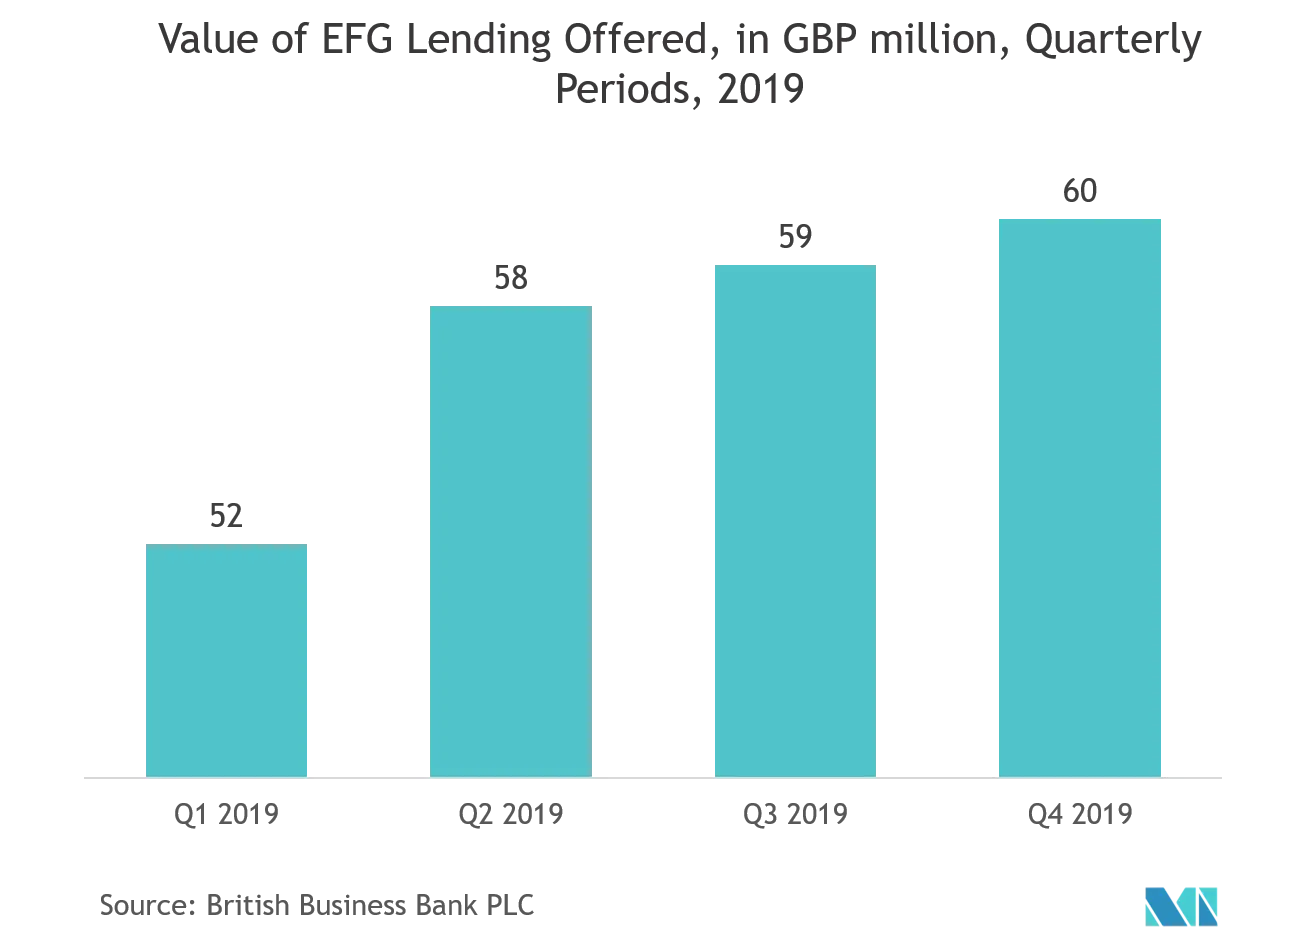 "Value of EFG Lending Offered, in GBP million, Quarterly Periods, 2019"